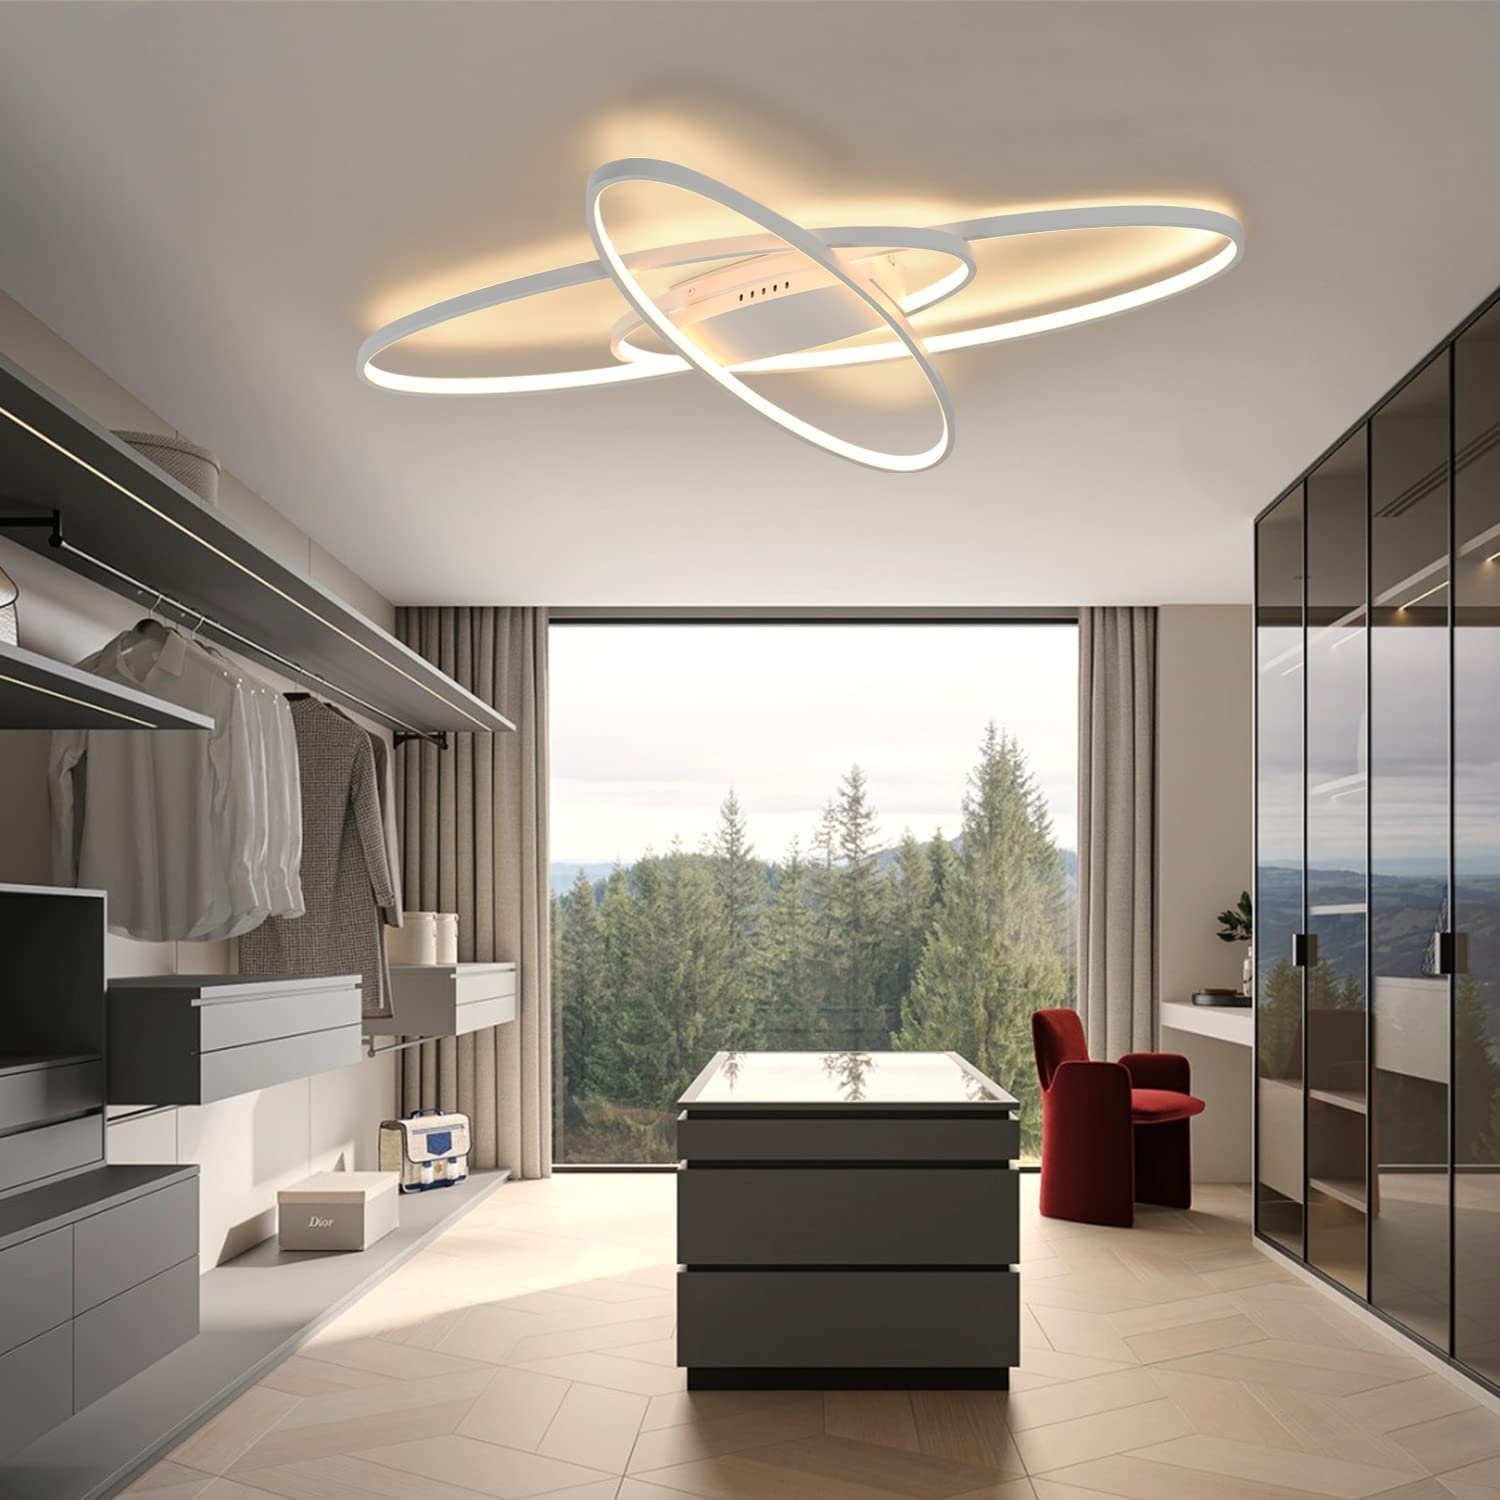 Deckenleuchte Geometrisch, Nettlife Fernbedienung Dimmbar mit Wohnzimmerlampe LED Dimmbar Weiß